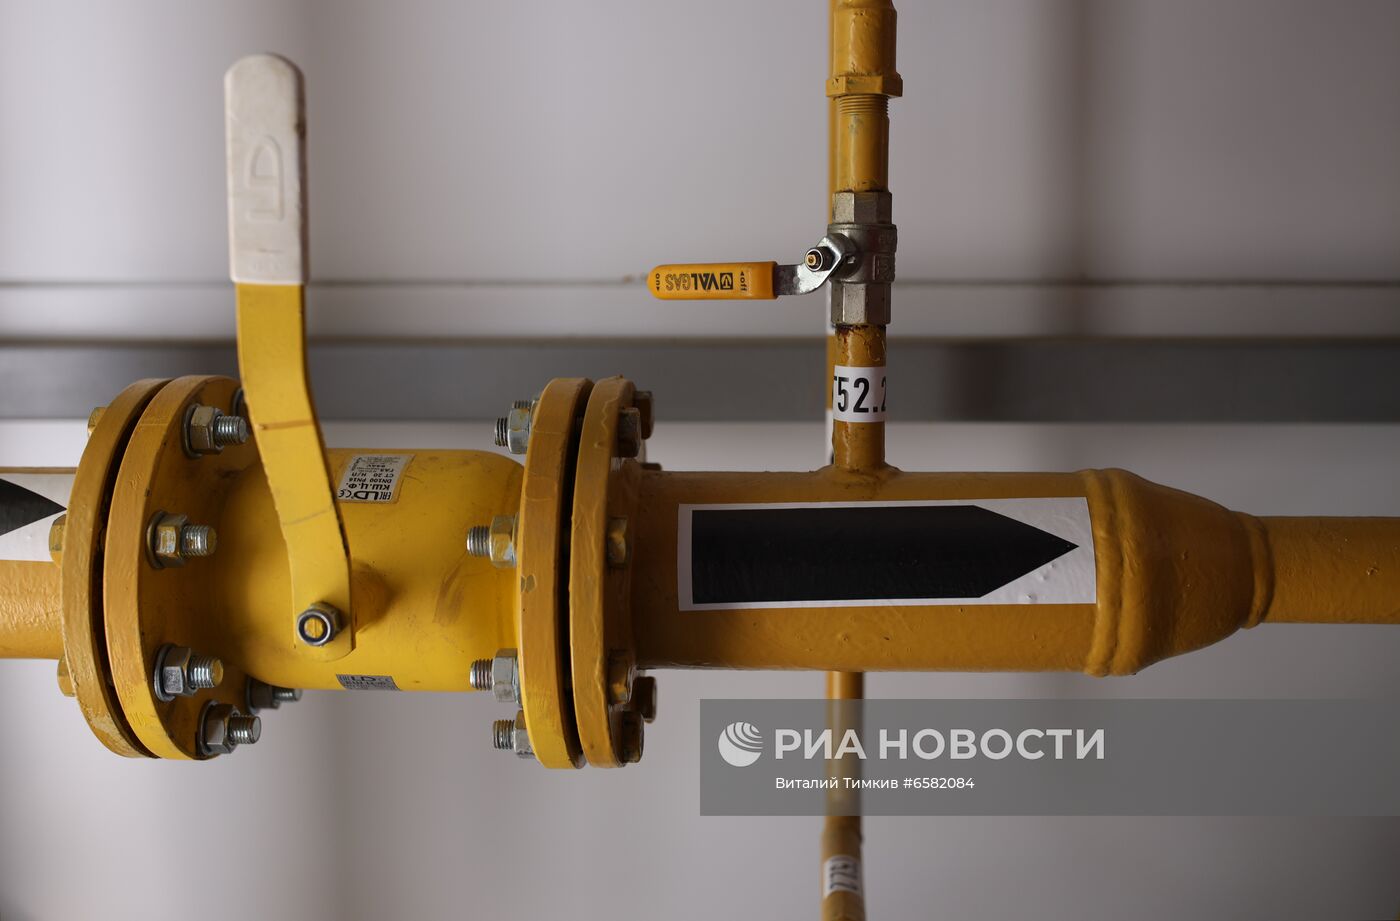 Во Всероссийский детский центр "Орленок" впервые провели газ